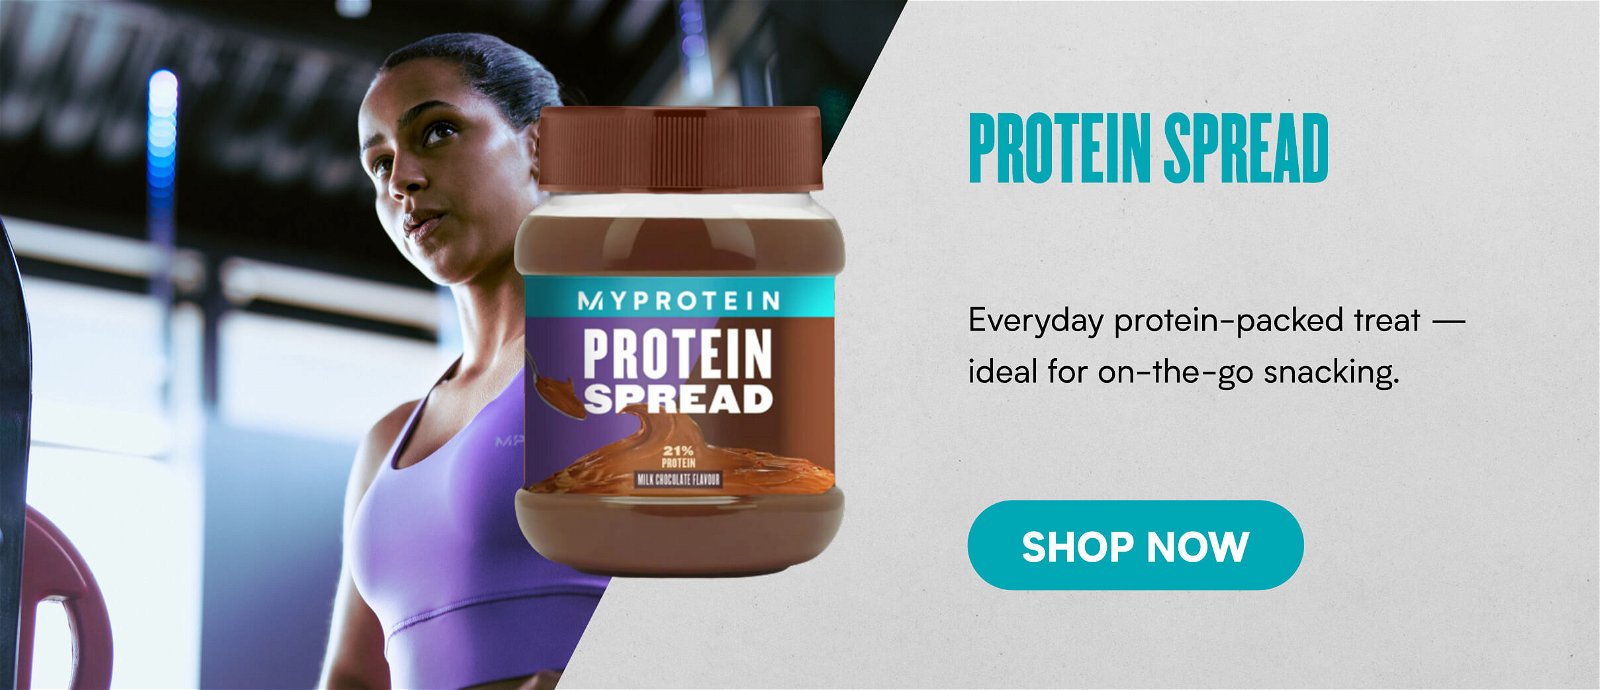 Protein Spread